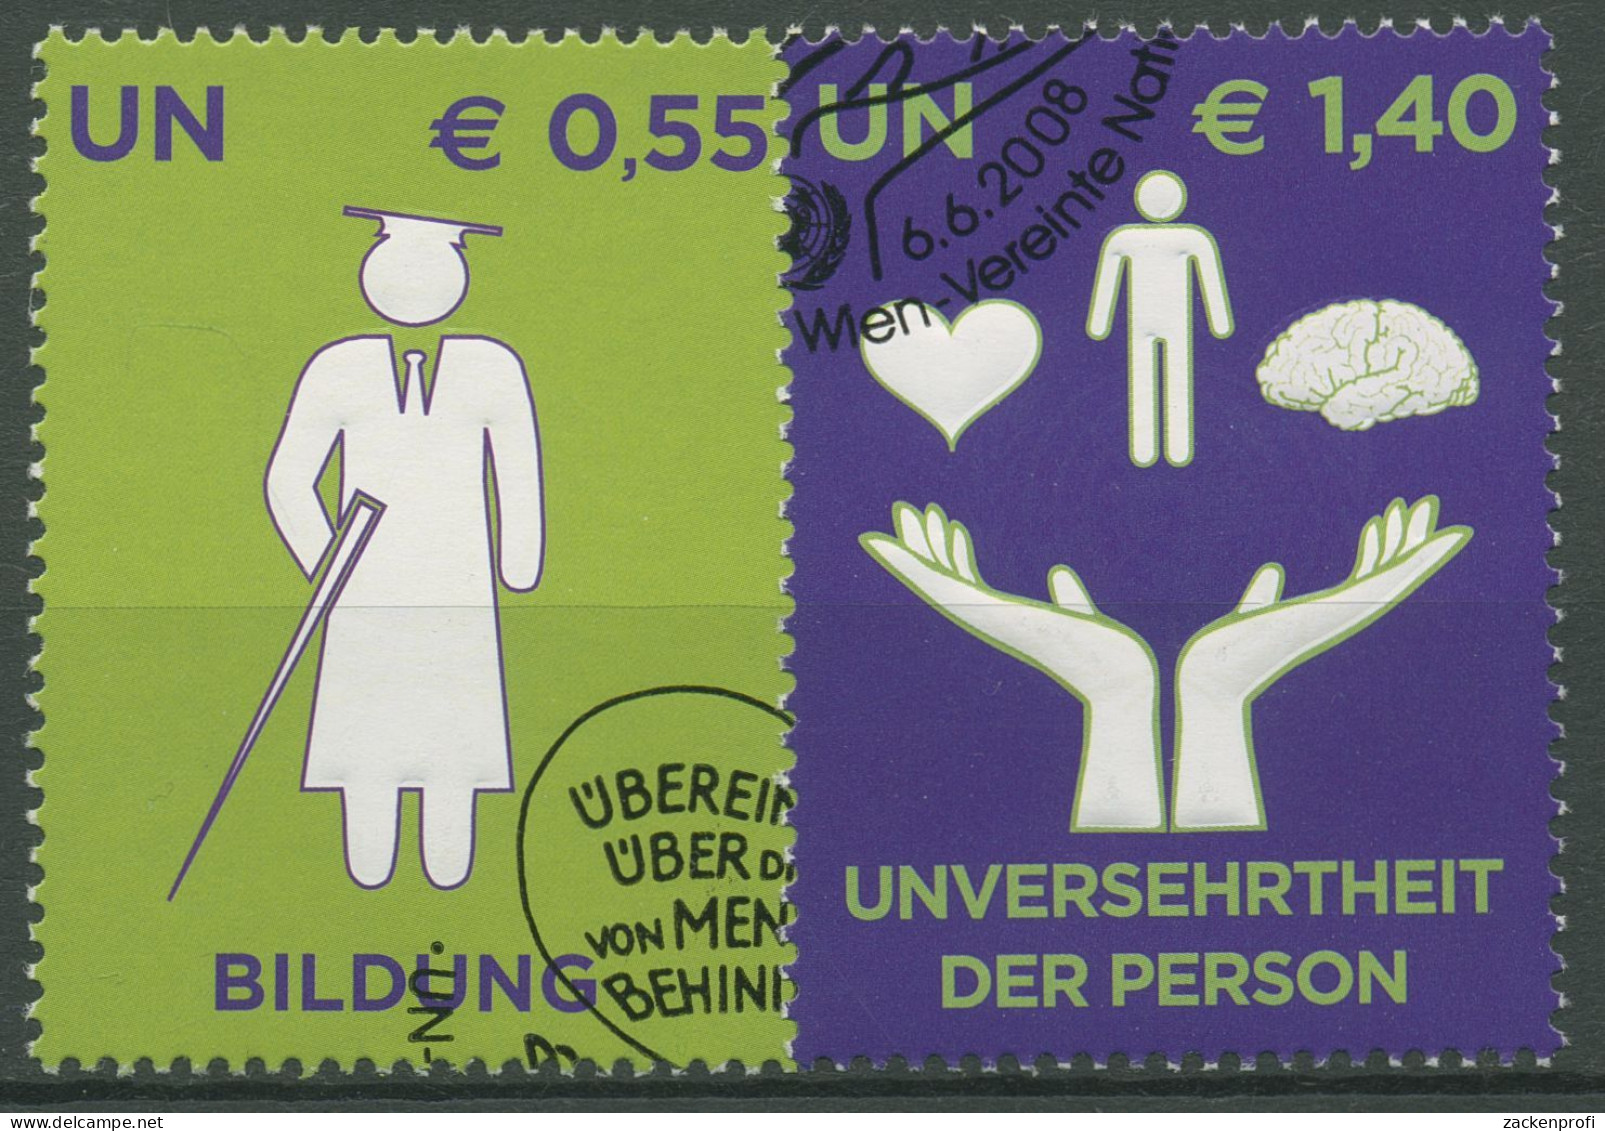 UNO Wien 2008 Menschen Mit Behinderung 543/44 Gestempelt - Oblitérés